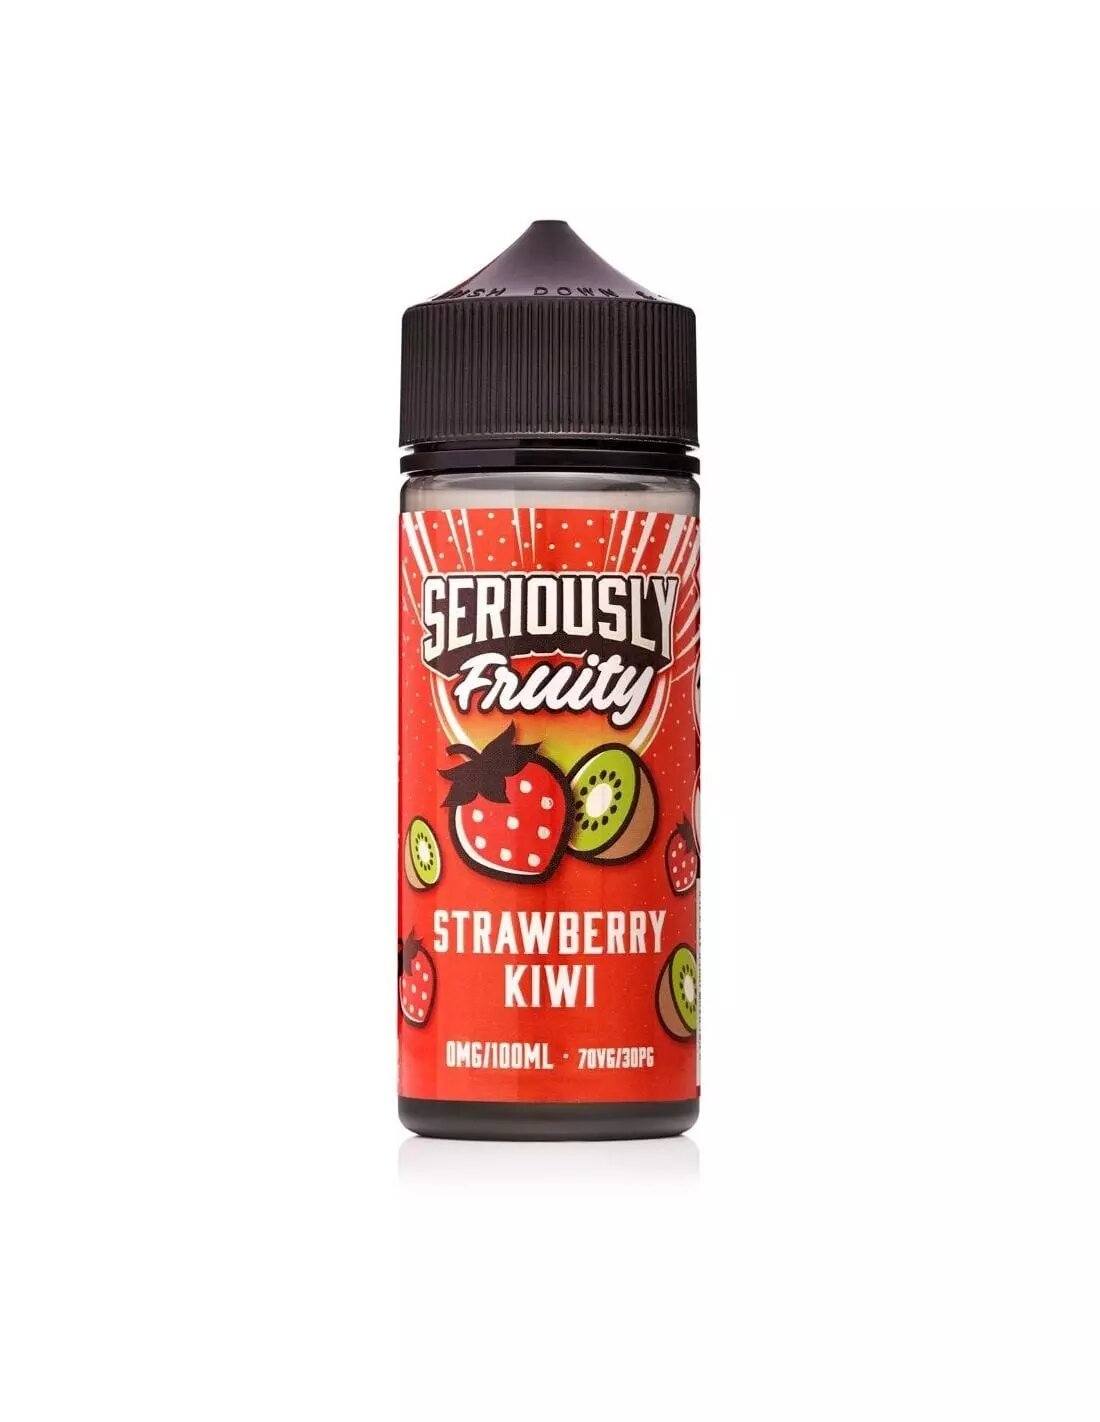 Seriously Fruity - Strawberry Kiwi - 100ml - Mcr Vape Distro